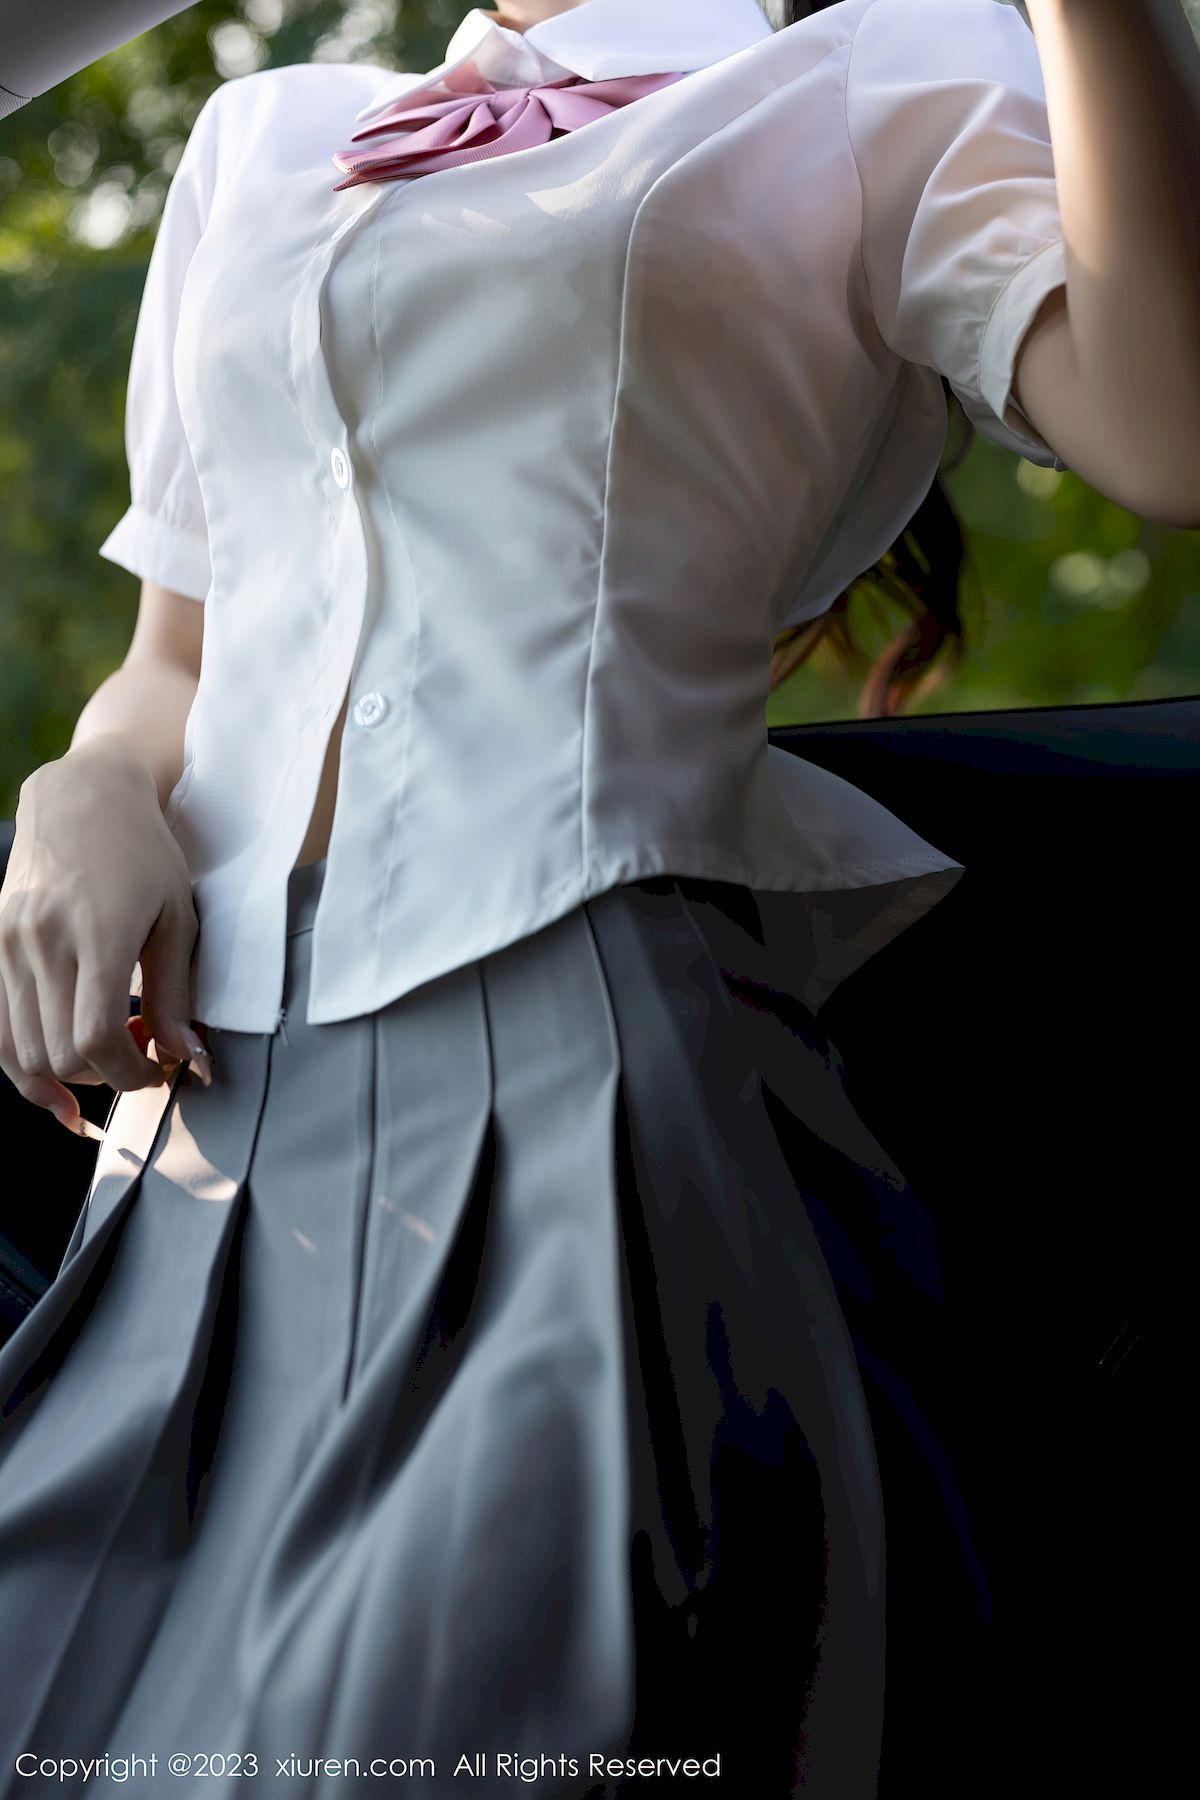 林星阑白色上衣搭配白丝短裙性感写真